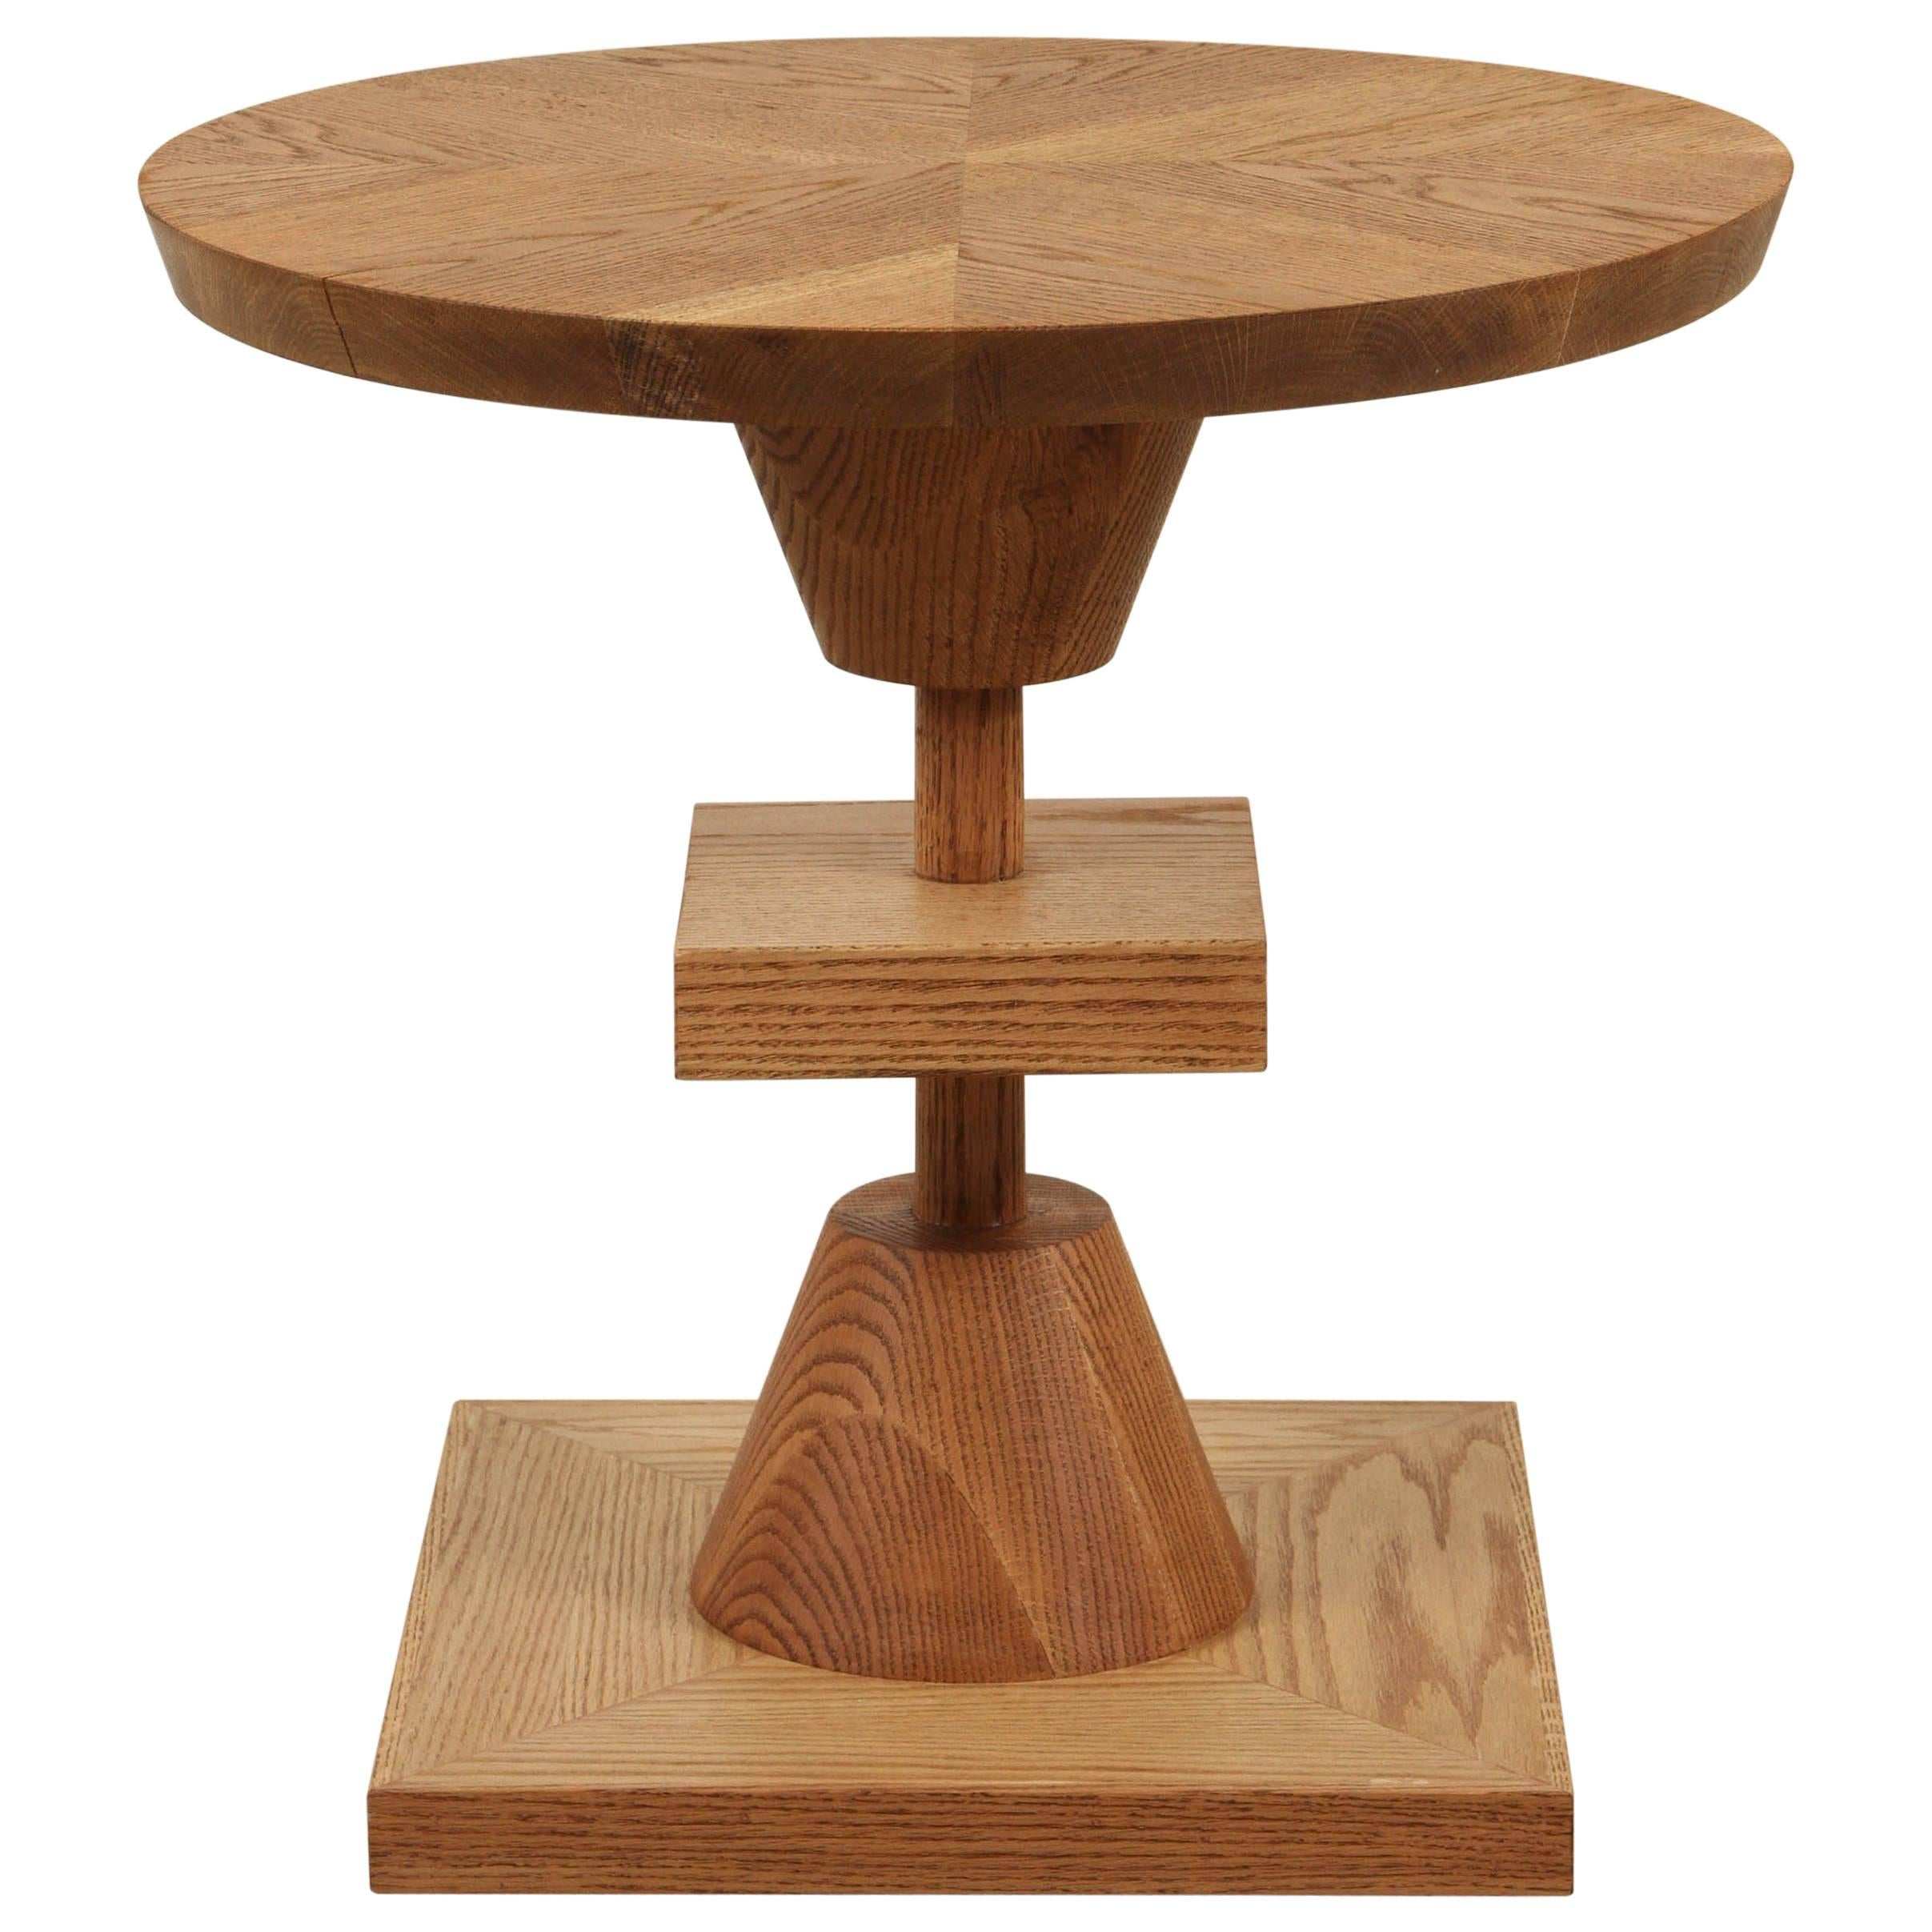 Morro Table by Lawson-Fenning